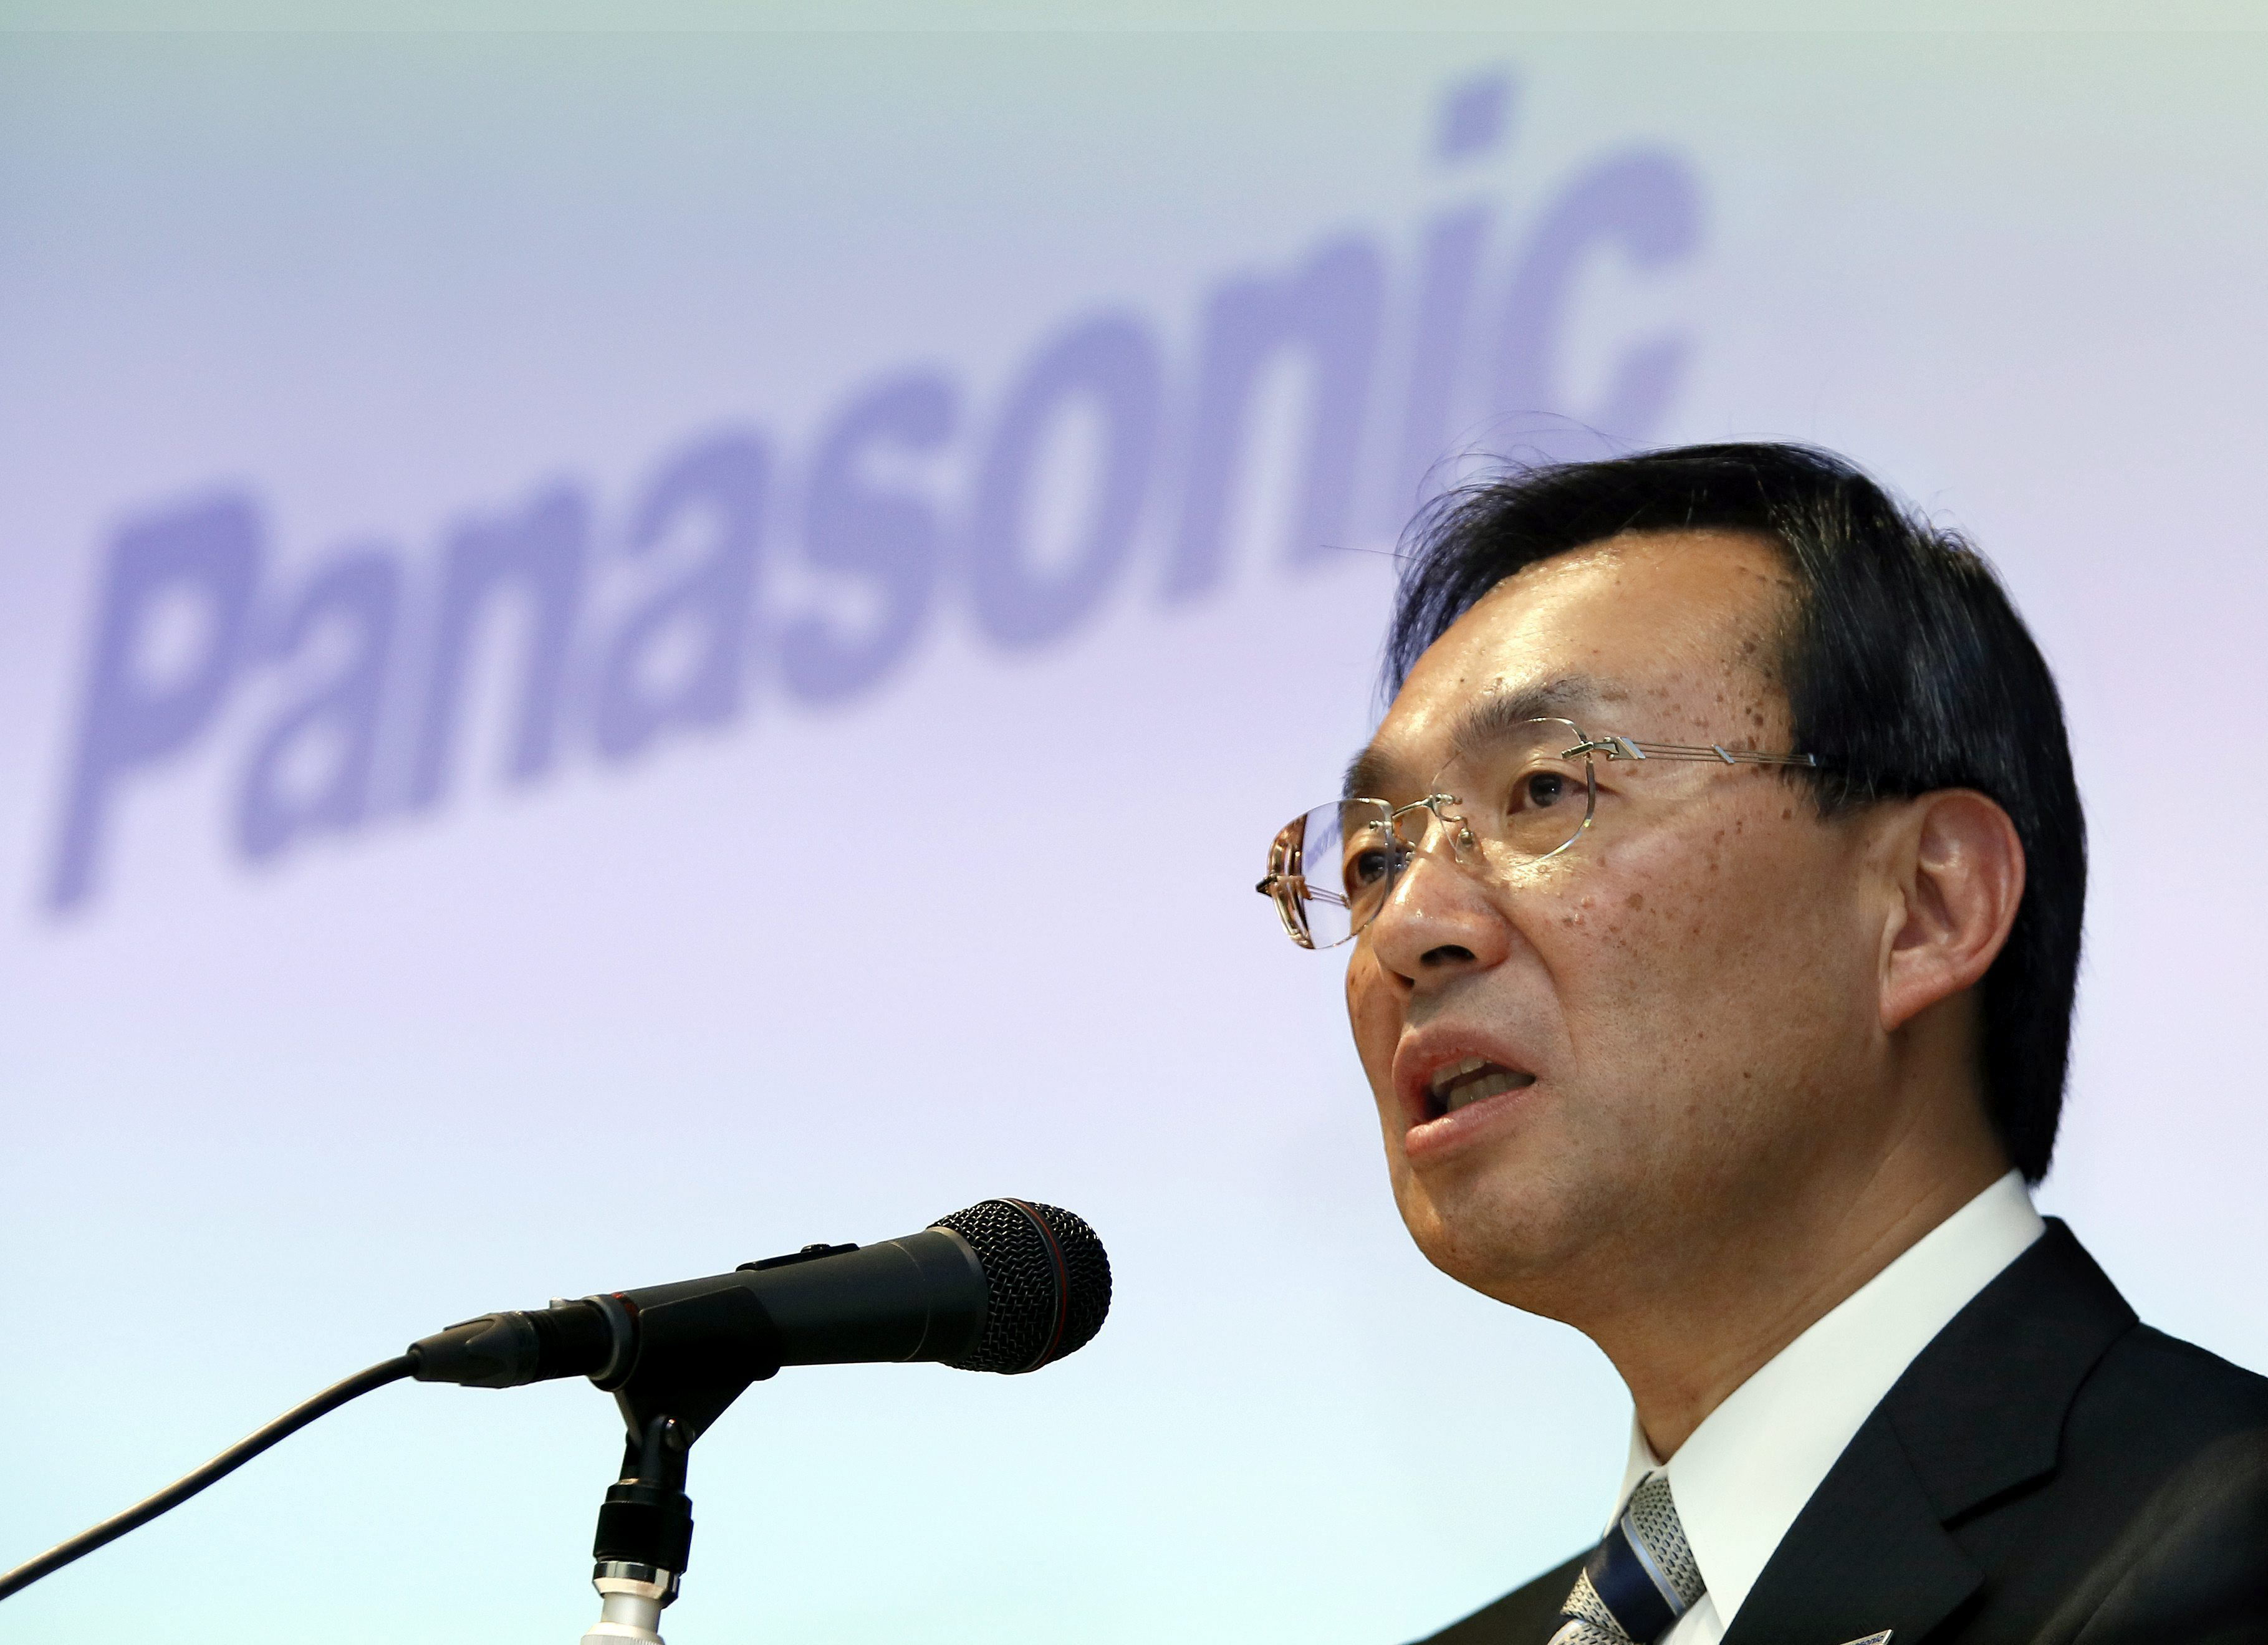 Panasonic suspendió negocios con Huawei por medidas de EEUU